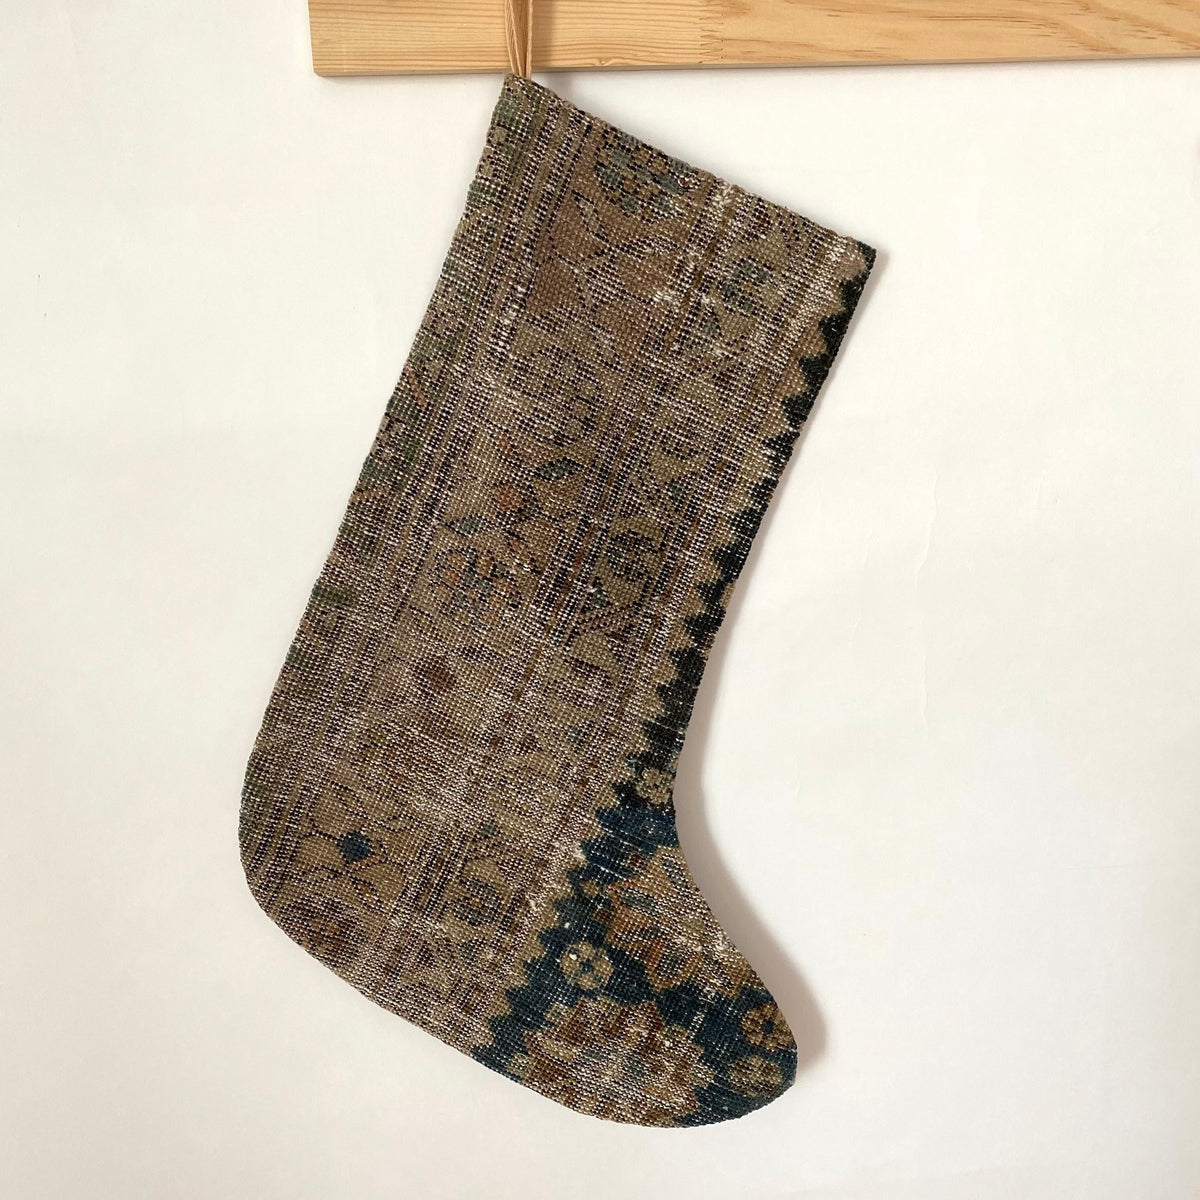 Kamella - Vintage Stocking - kudenrugs